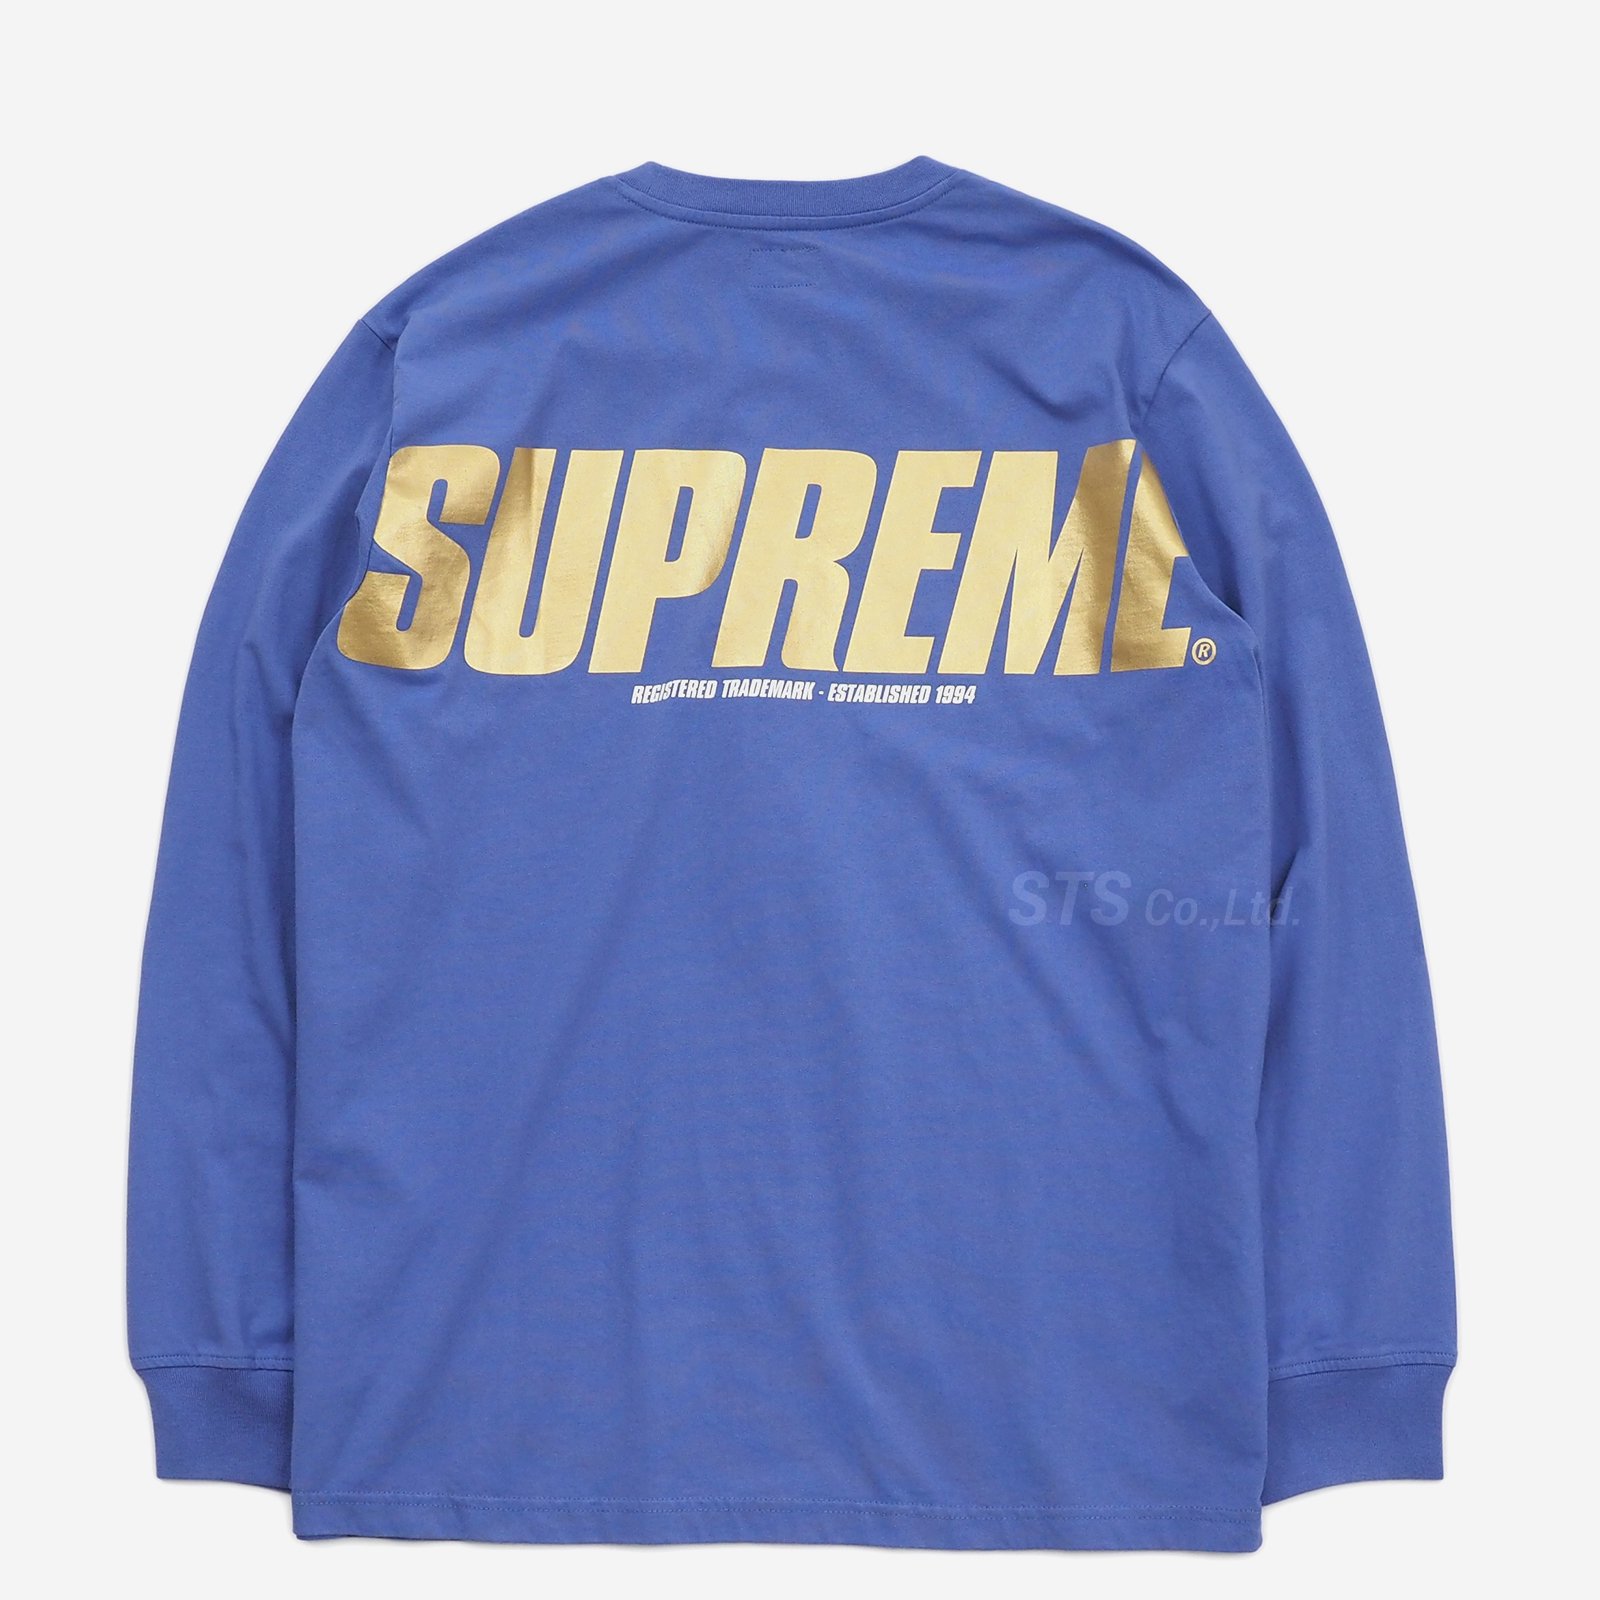 supremeサイズsupreme Trademark L/S Top